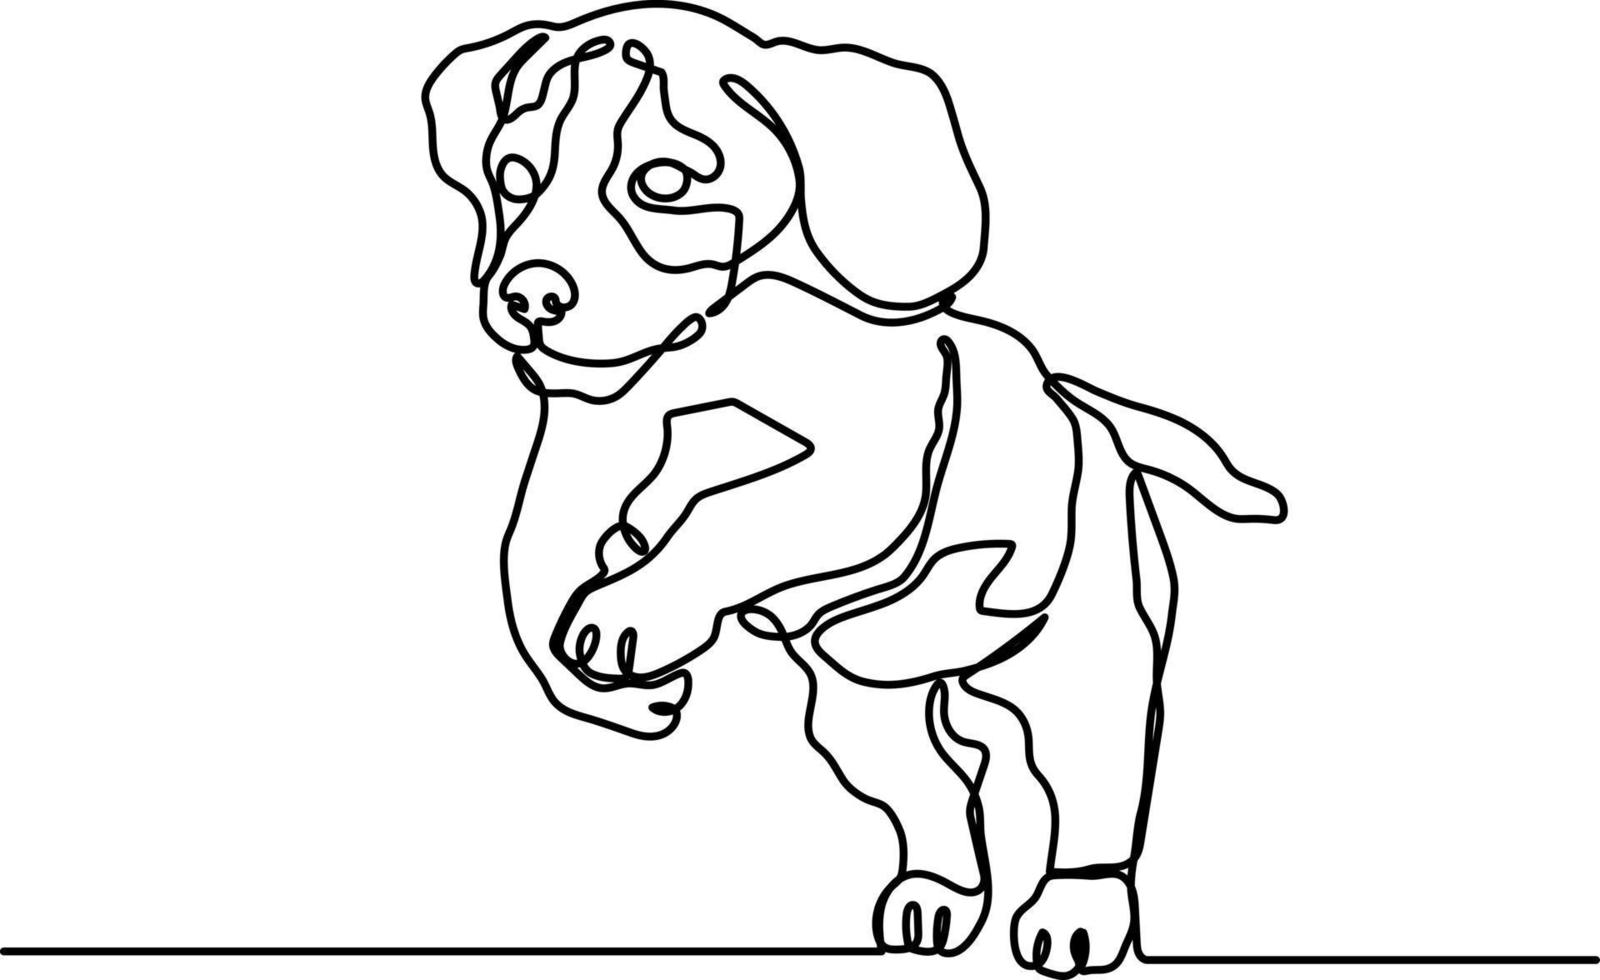 vervolgt lijn schattige beagle puppy vector